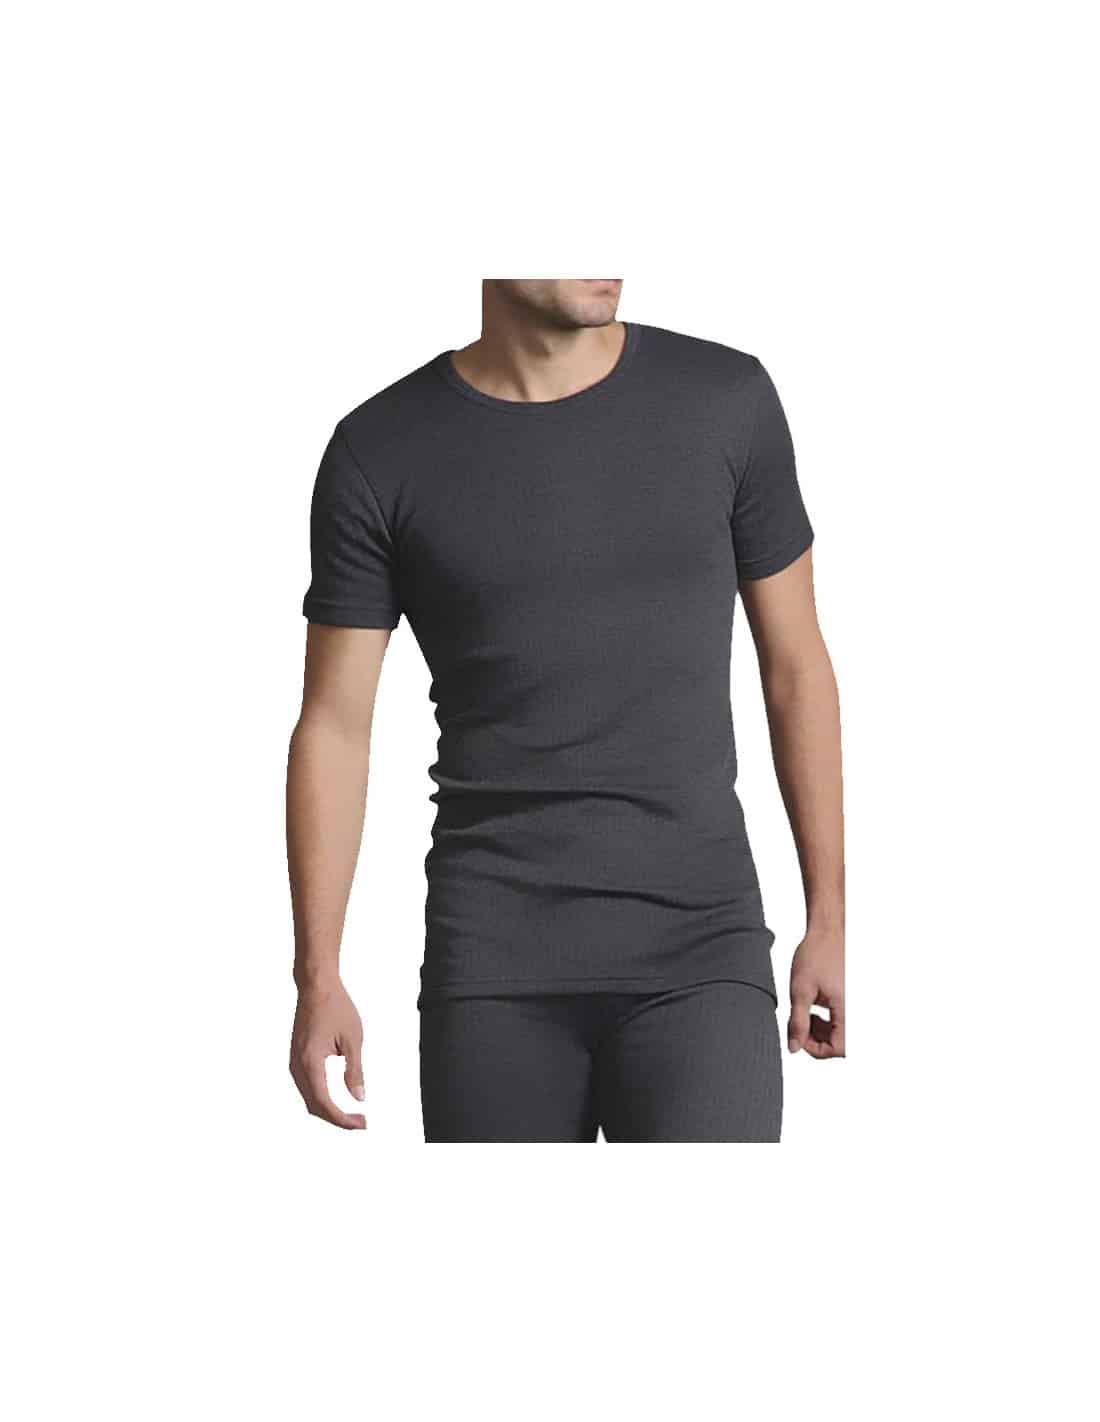 T-shirt thermique à manches courtes homme avec ceinture lombaire élast